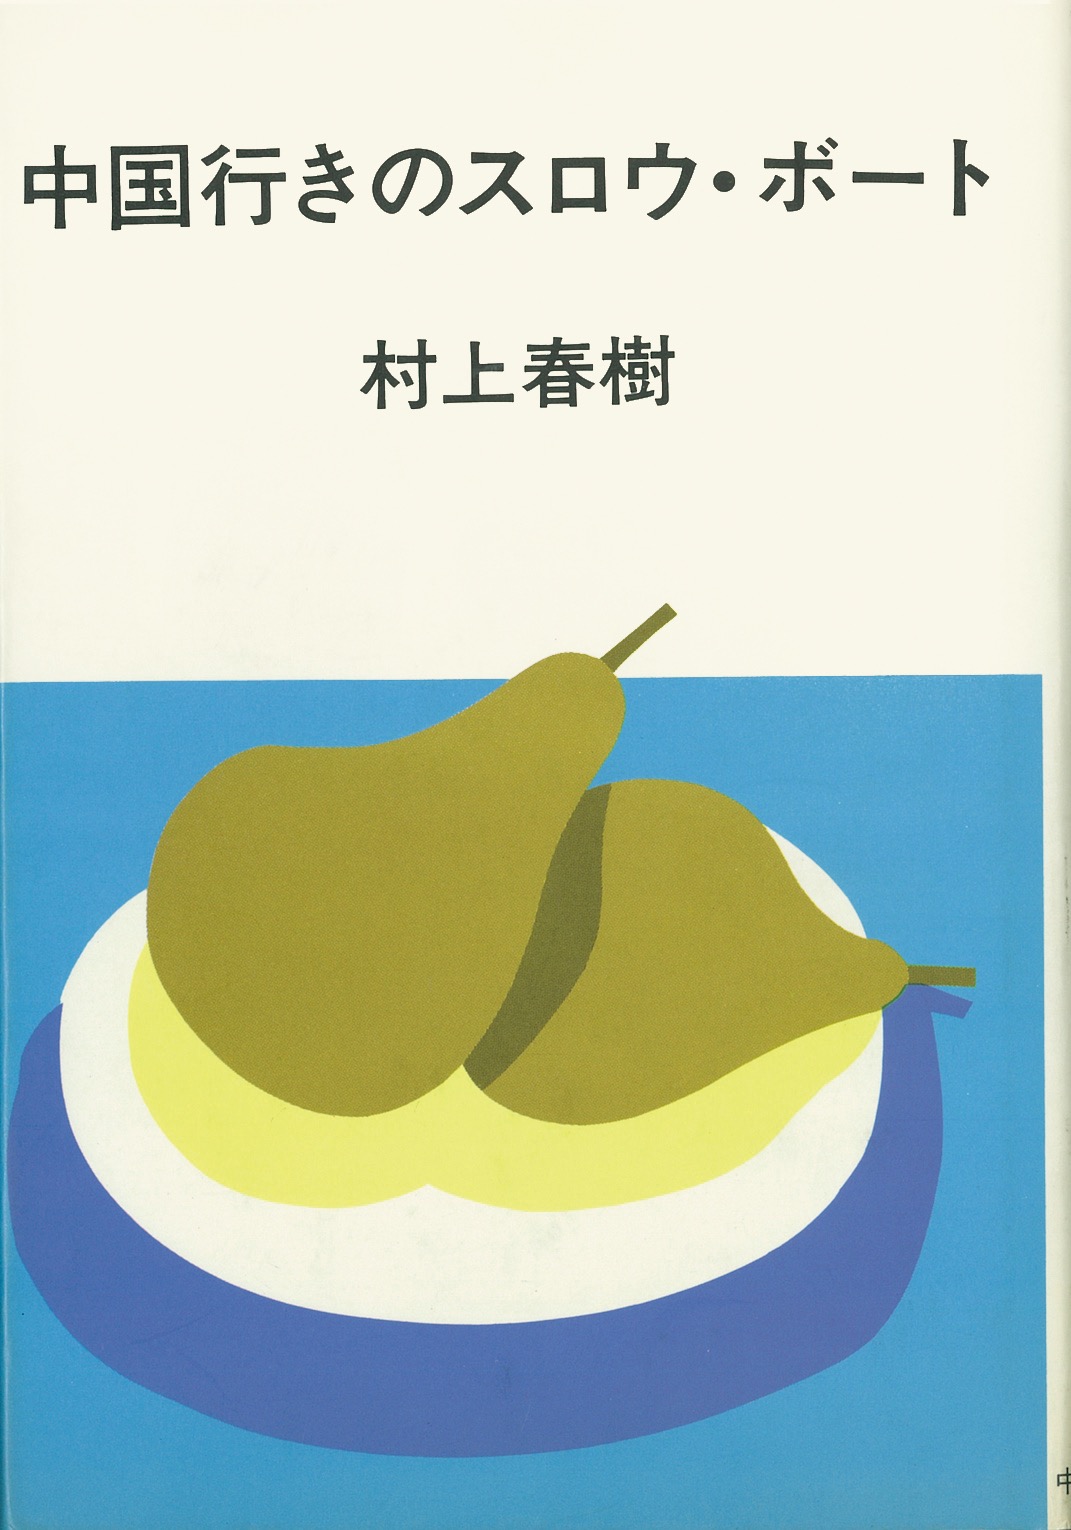 発刊された短編集。『中国行きのスロウ・ボート』（中央公論社1983年）Illustrated by Mizumaru Anzai ©Masumi Kishida